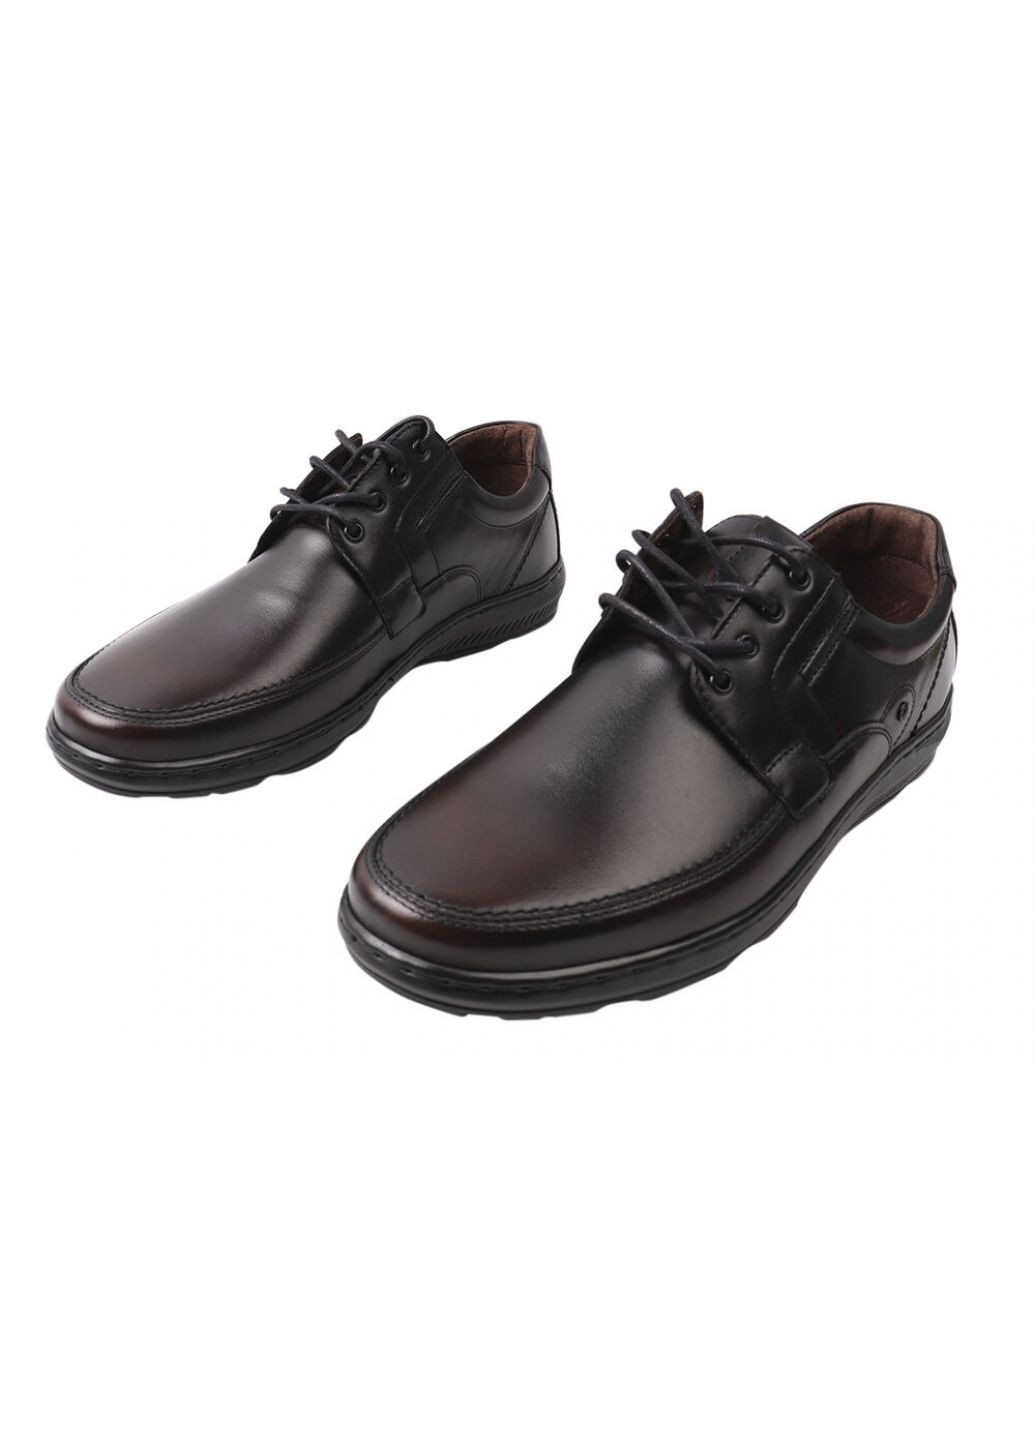 Черные туфли мужские из натуральной кожи, на низком ходу, цвет черный, Giorgio